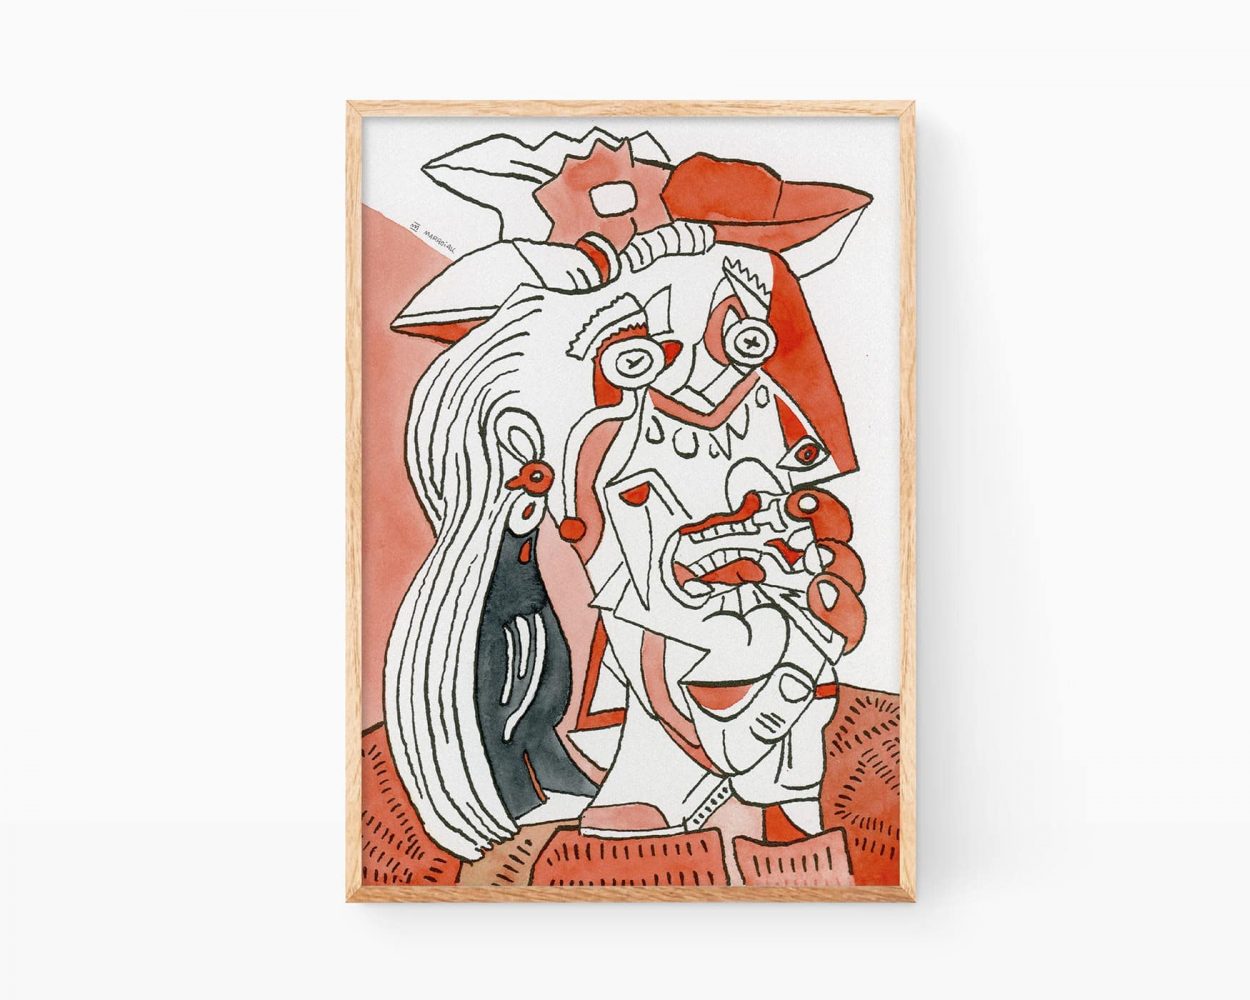 Cuadro La mujer que llora de Pablo Picasso (Marroiak Remix). Lámina con una ilustración cubista de una chicha llorando. Obras de arte contemporano versions